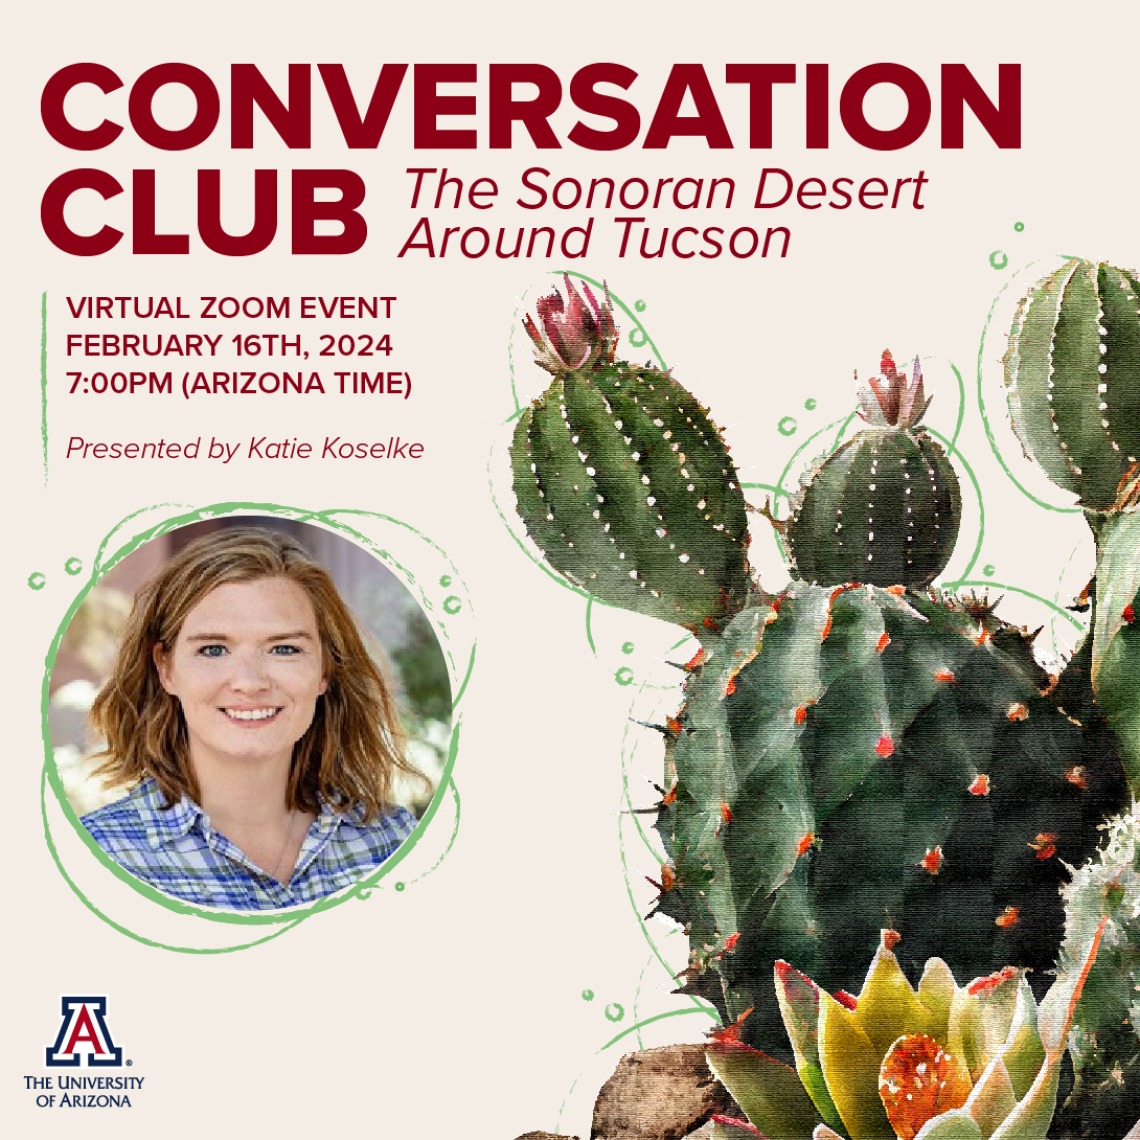 Conversation Club - The Sonoran Desert around Tucson